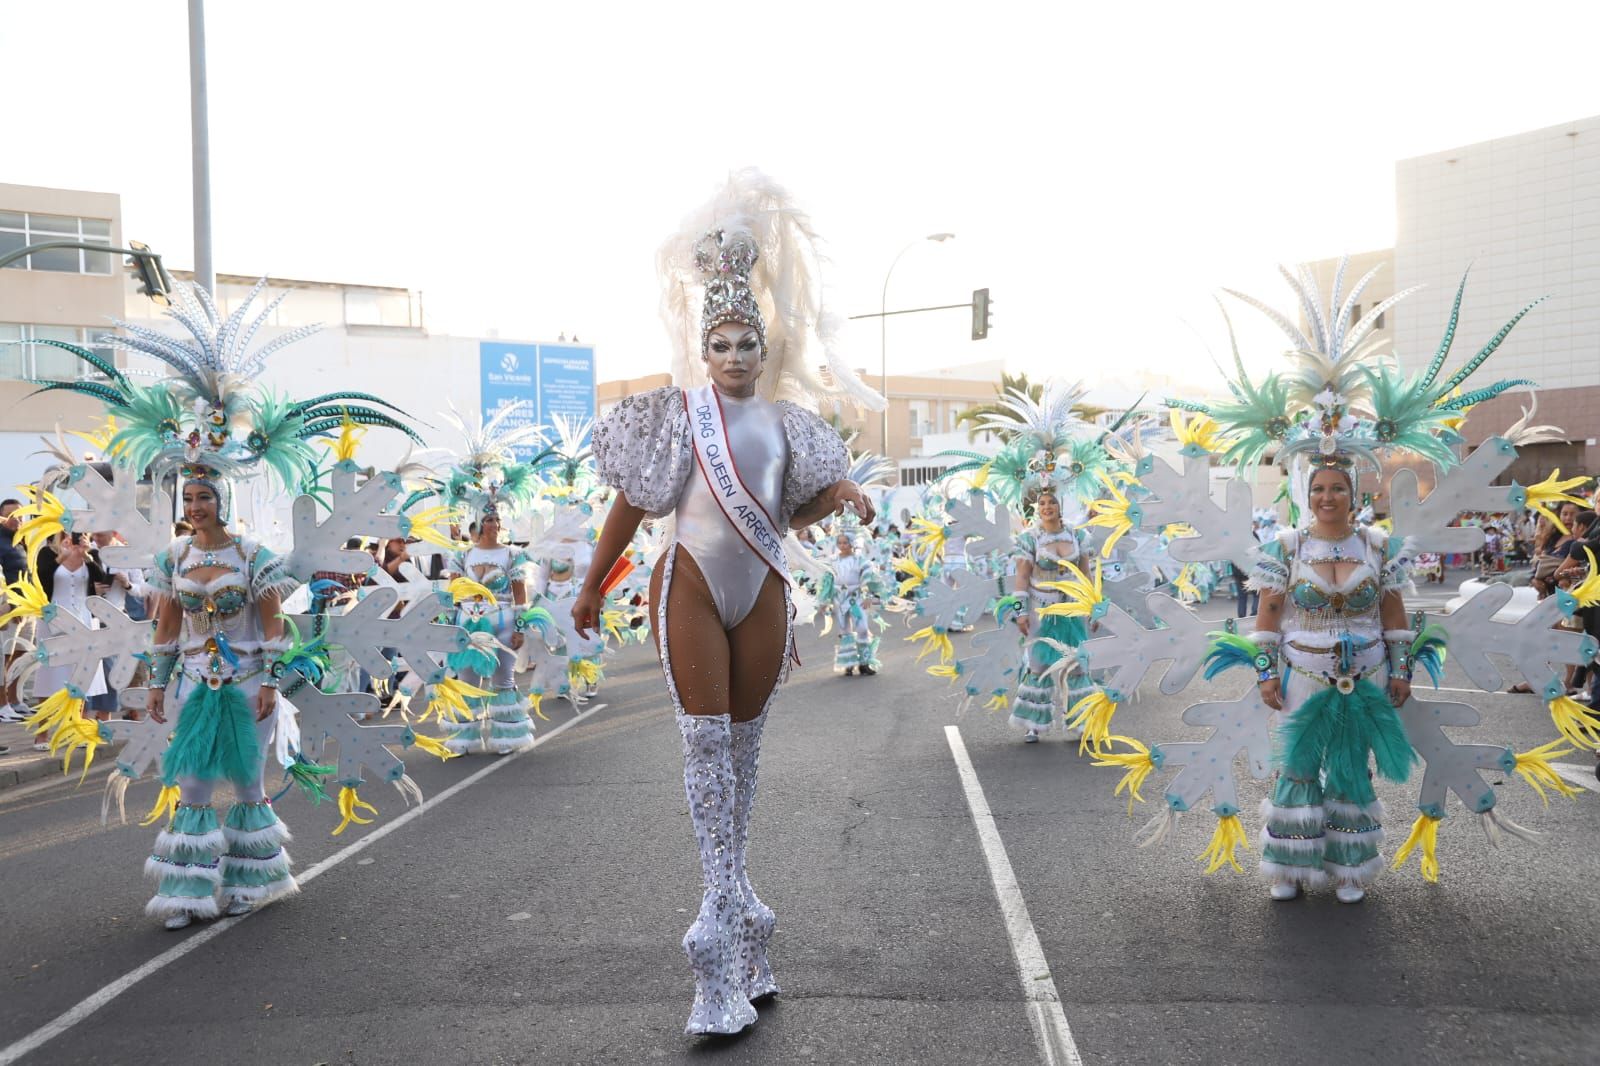 Coso del Carnaval de Arrecife 2024